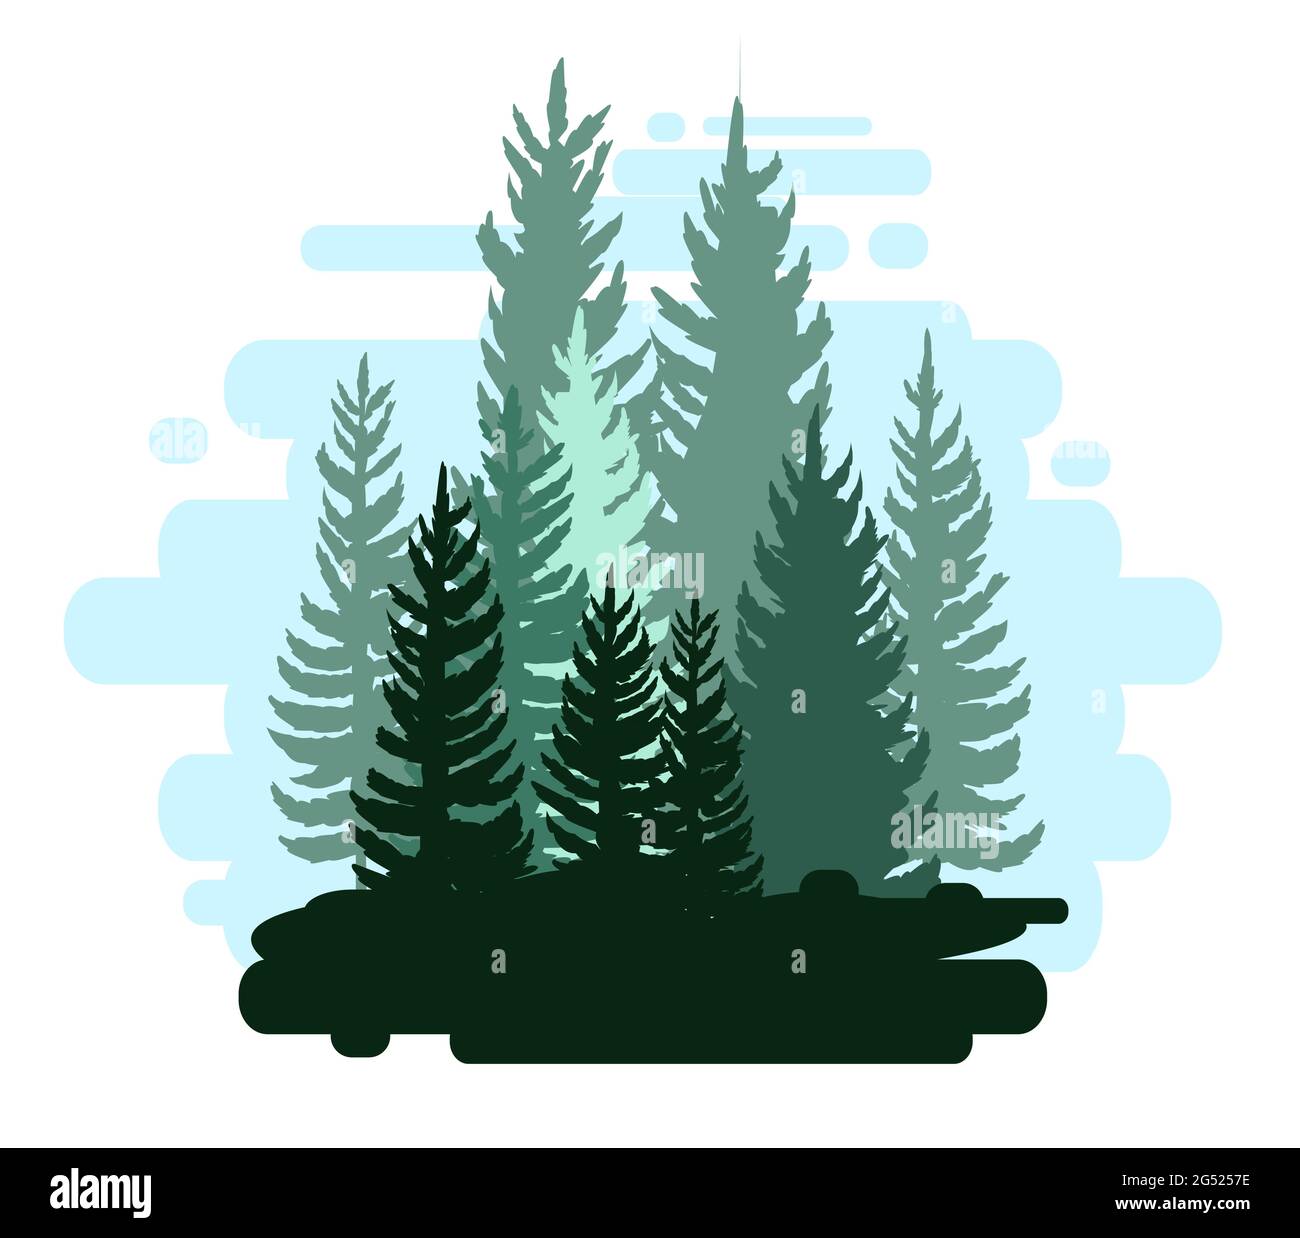 Wald Silhouette Szene. Landschaft mit Nadelbäumen. Wunderschöne blaue Aussicht. Kiefern- und Fichtenbäume. Sommer Natur. Isolierte Vektorgrafiken für Illustrationen Stock Vektor